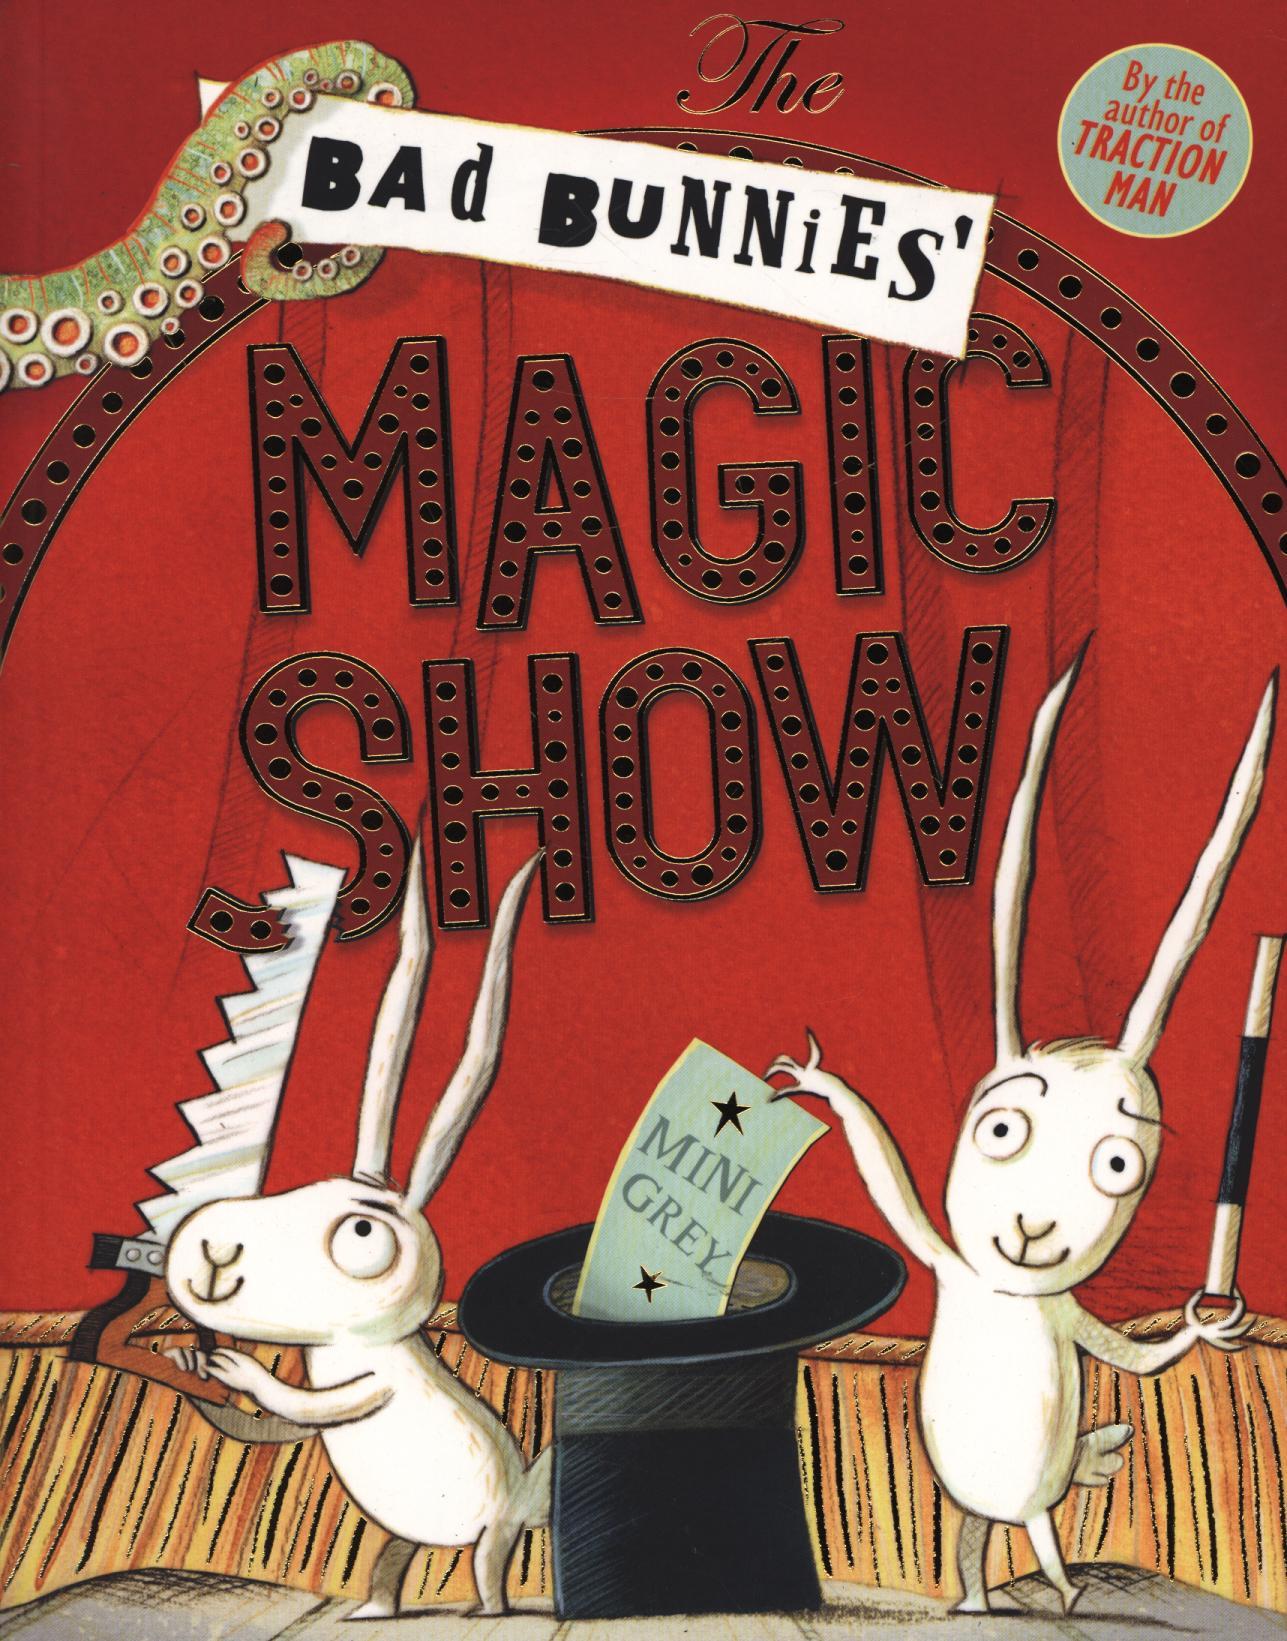 Bad Bunnies' Magic Show